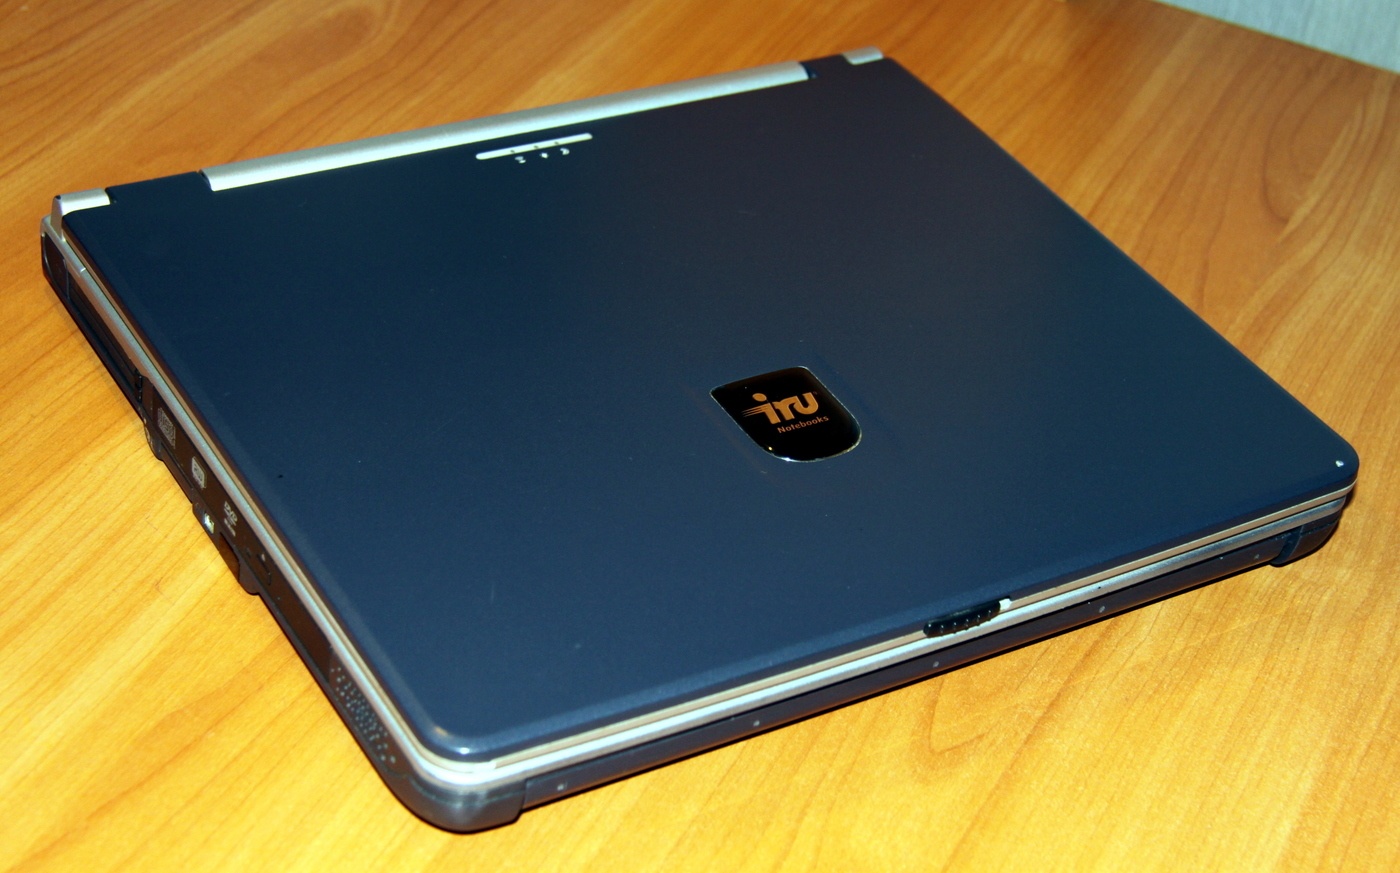 Обзор отечественного ноутбука iRU Brava-4215COMBO, выпущенного в 2004 году (Часть 1) - 1